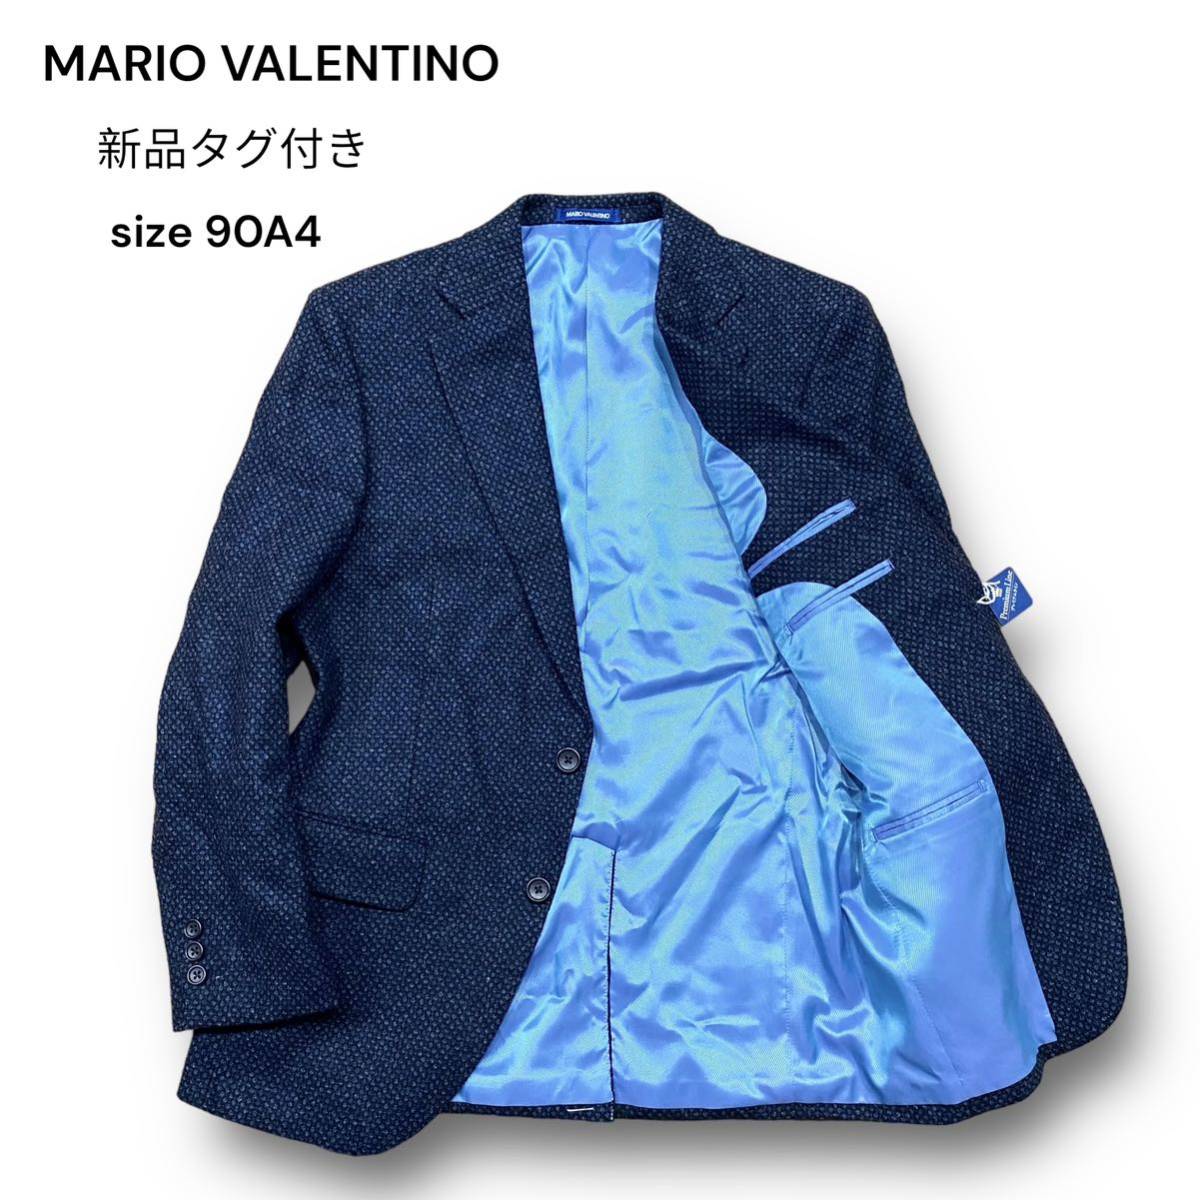 新品 タグ付き MARIO VALENTINO Premium Line 2B 総裏 テーラード ジャケット ウール 秋冬 ネイビー 紺色 マリオ ヴァレンティーノ 90A4